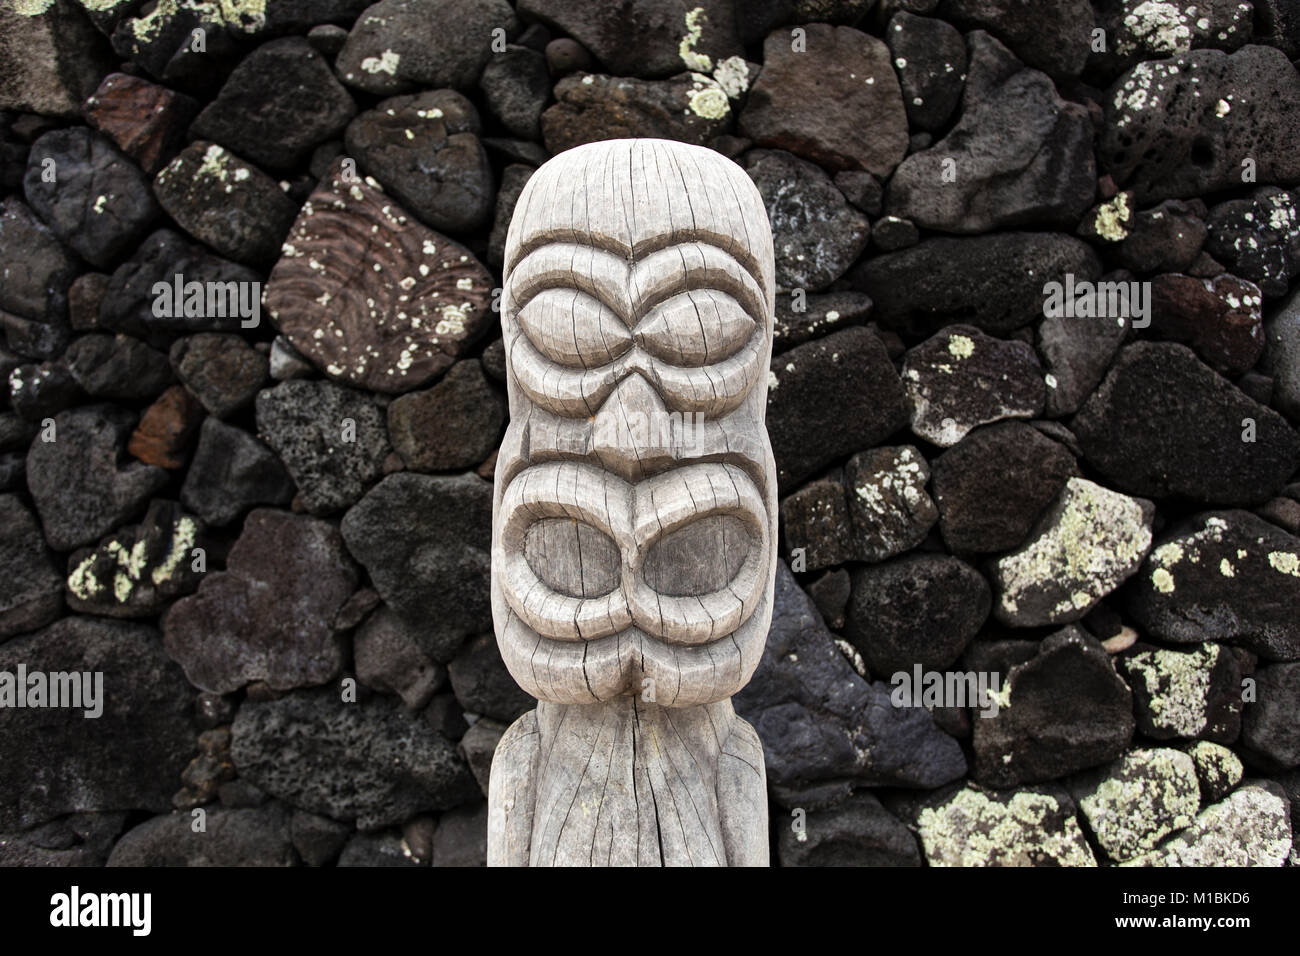 Tiki of Puuhonua o honaunau, (Place of Refuge), Big Island, Hawaii Stock Photo